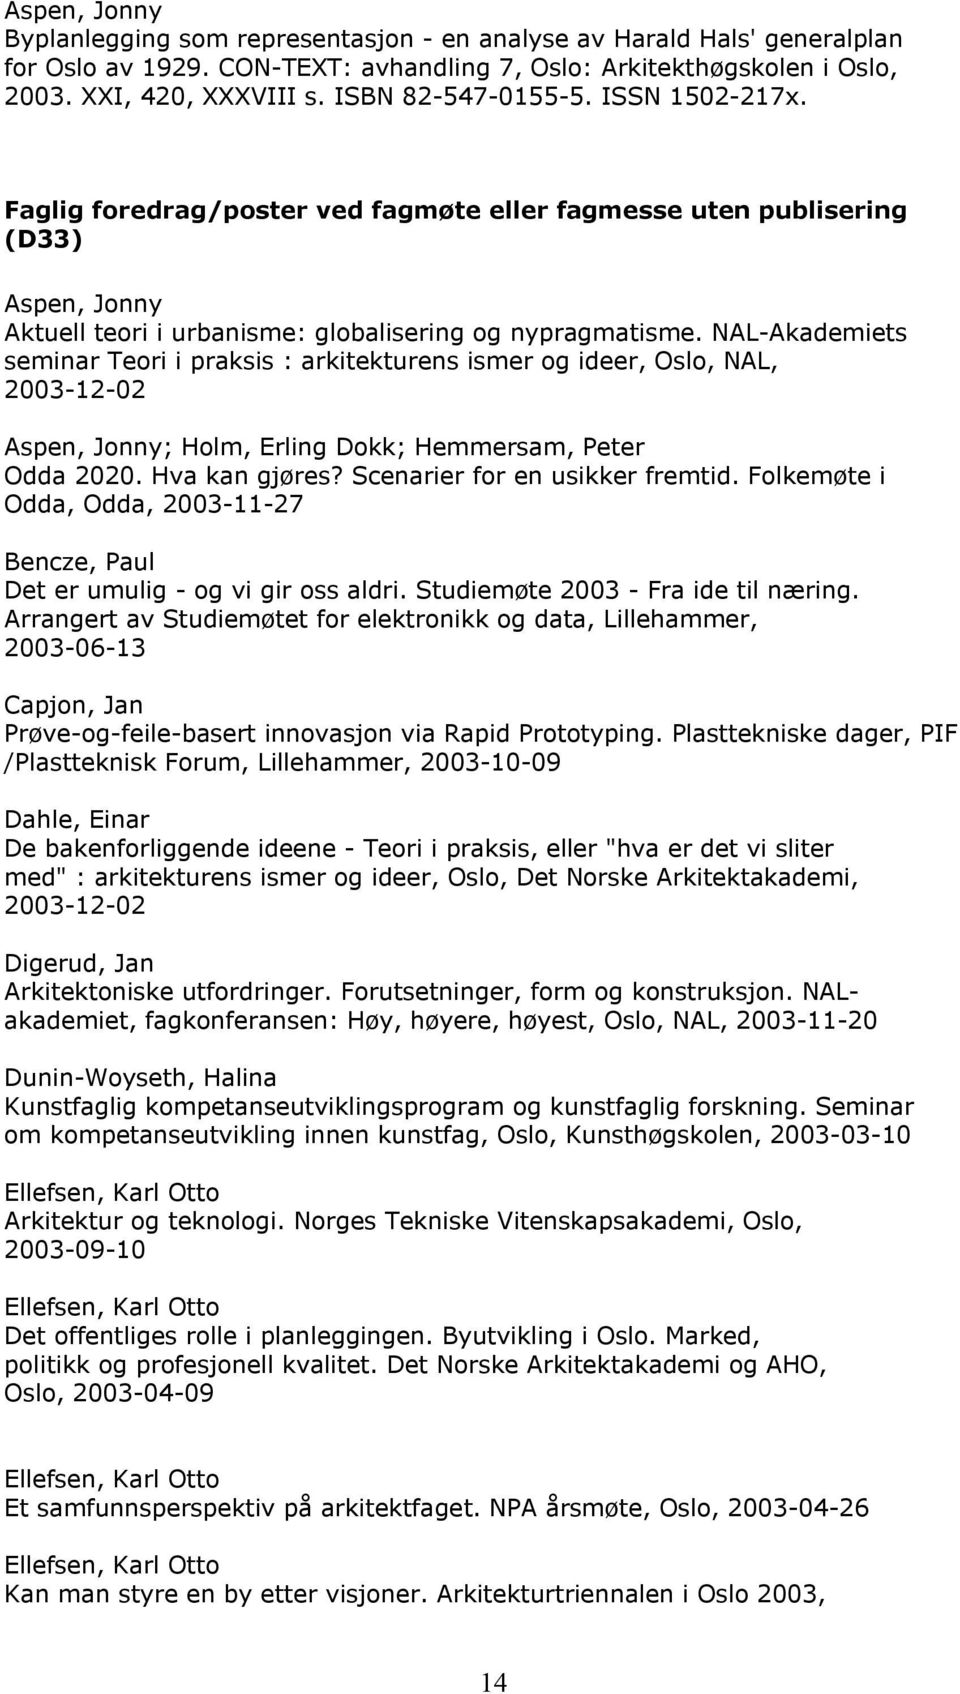 NAL-Akademiets seminar Teori i praksis : arkitekturens ismer og ideer, Oslo, NAL, 2003-12-02 Aspen, Jonny; ; Hemmersam, Peter Odda 2020. Hva kan gjøres? Scenarier for en usikker fremtid.